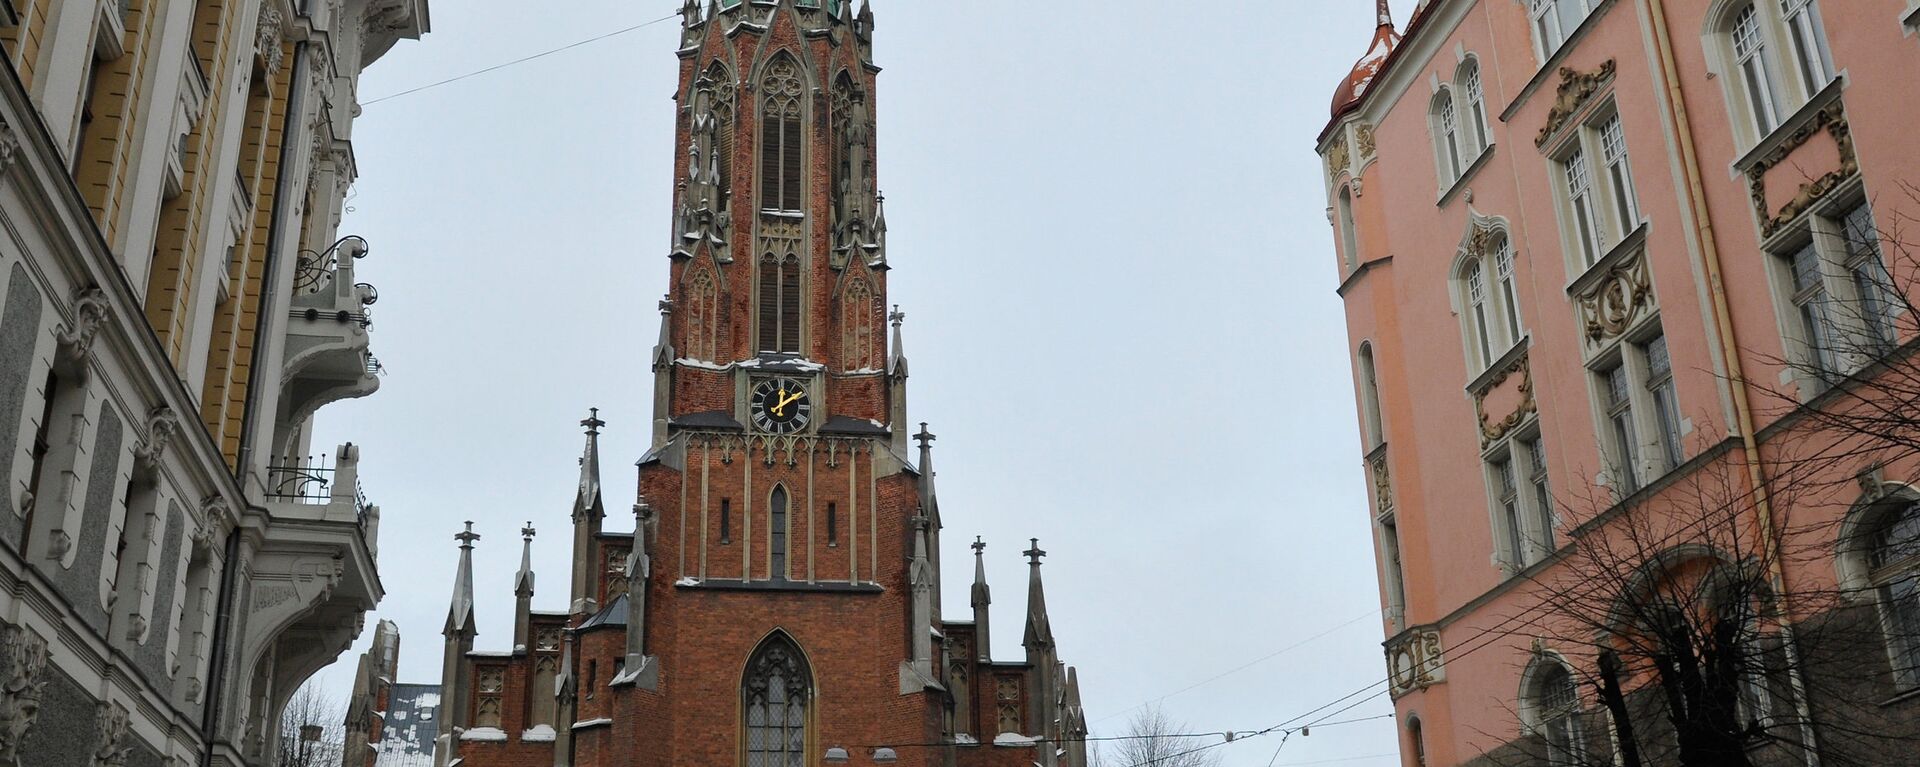 Церковь Святой Гертруды - Sputnik Латвия, 1920, 18.02.2021